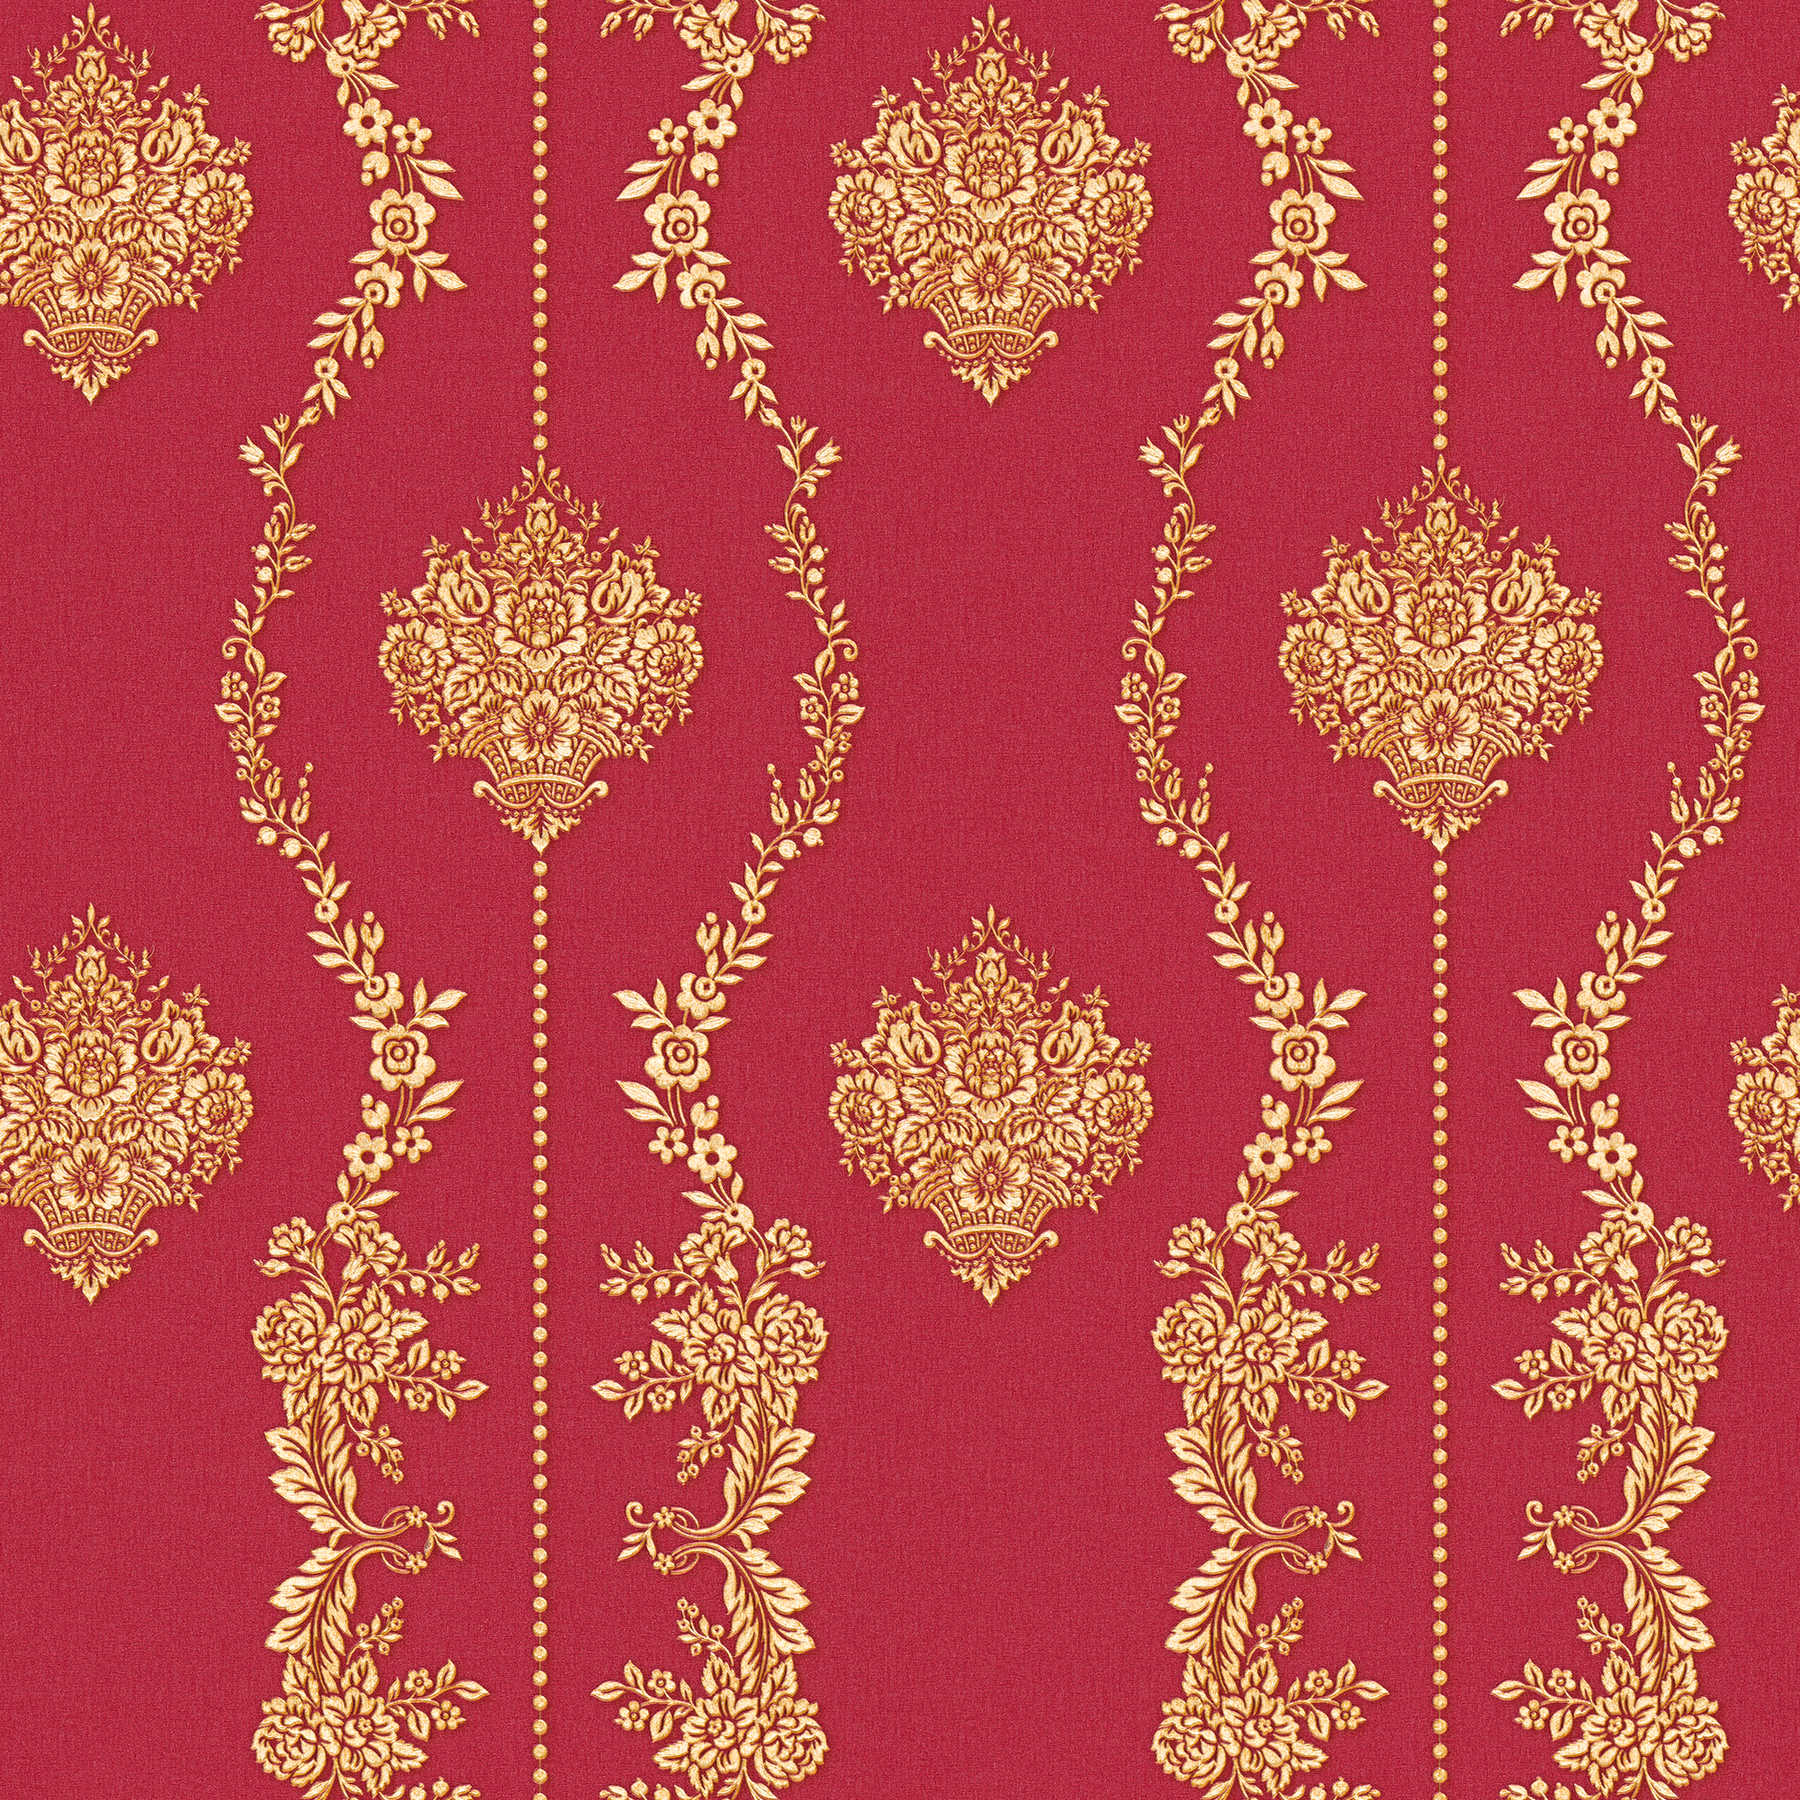 Papier peint ornemental classique avec effet doré - métallique, rouge
